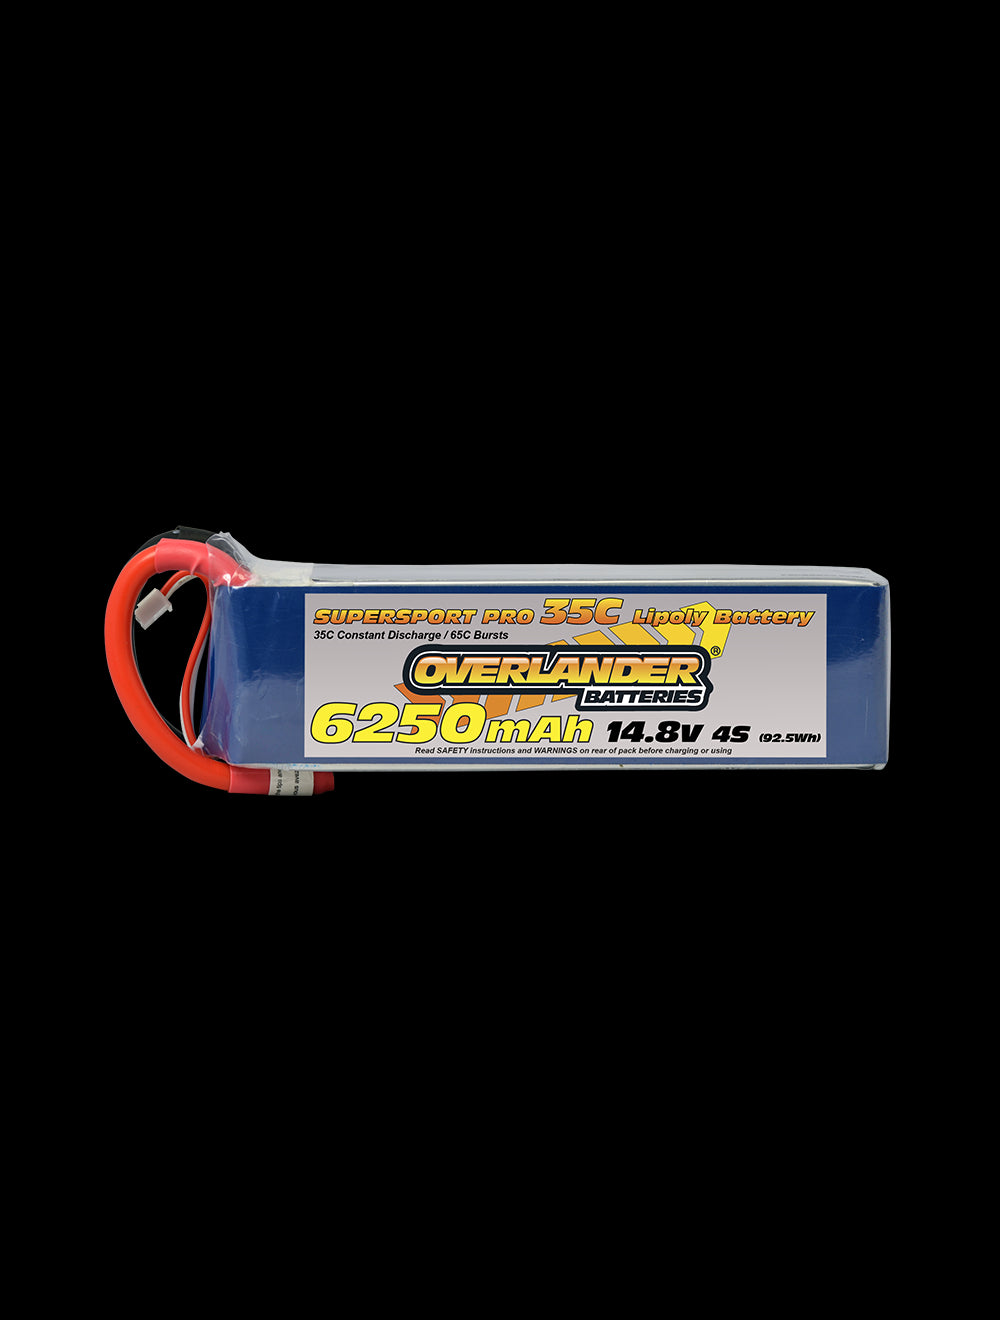 Overlander 6250mAh 14.8V 4S 35C Supersport Pro LiPo Battery - No Connector 2770